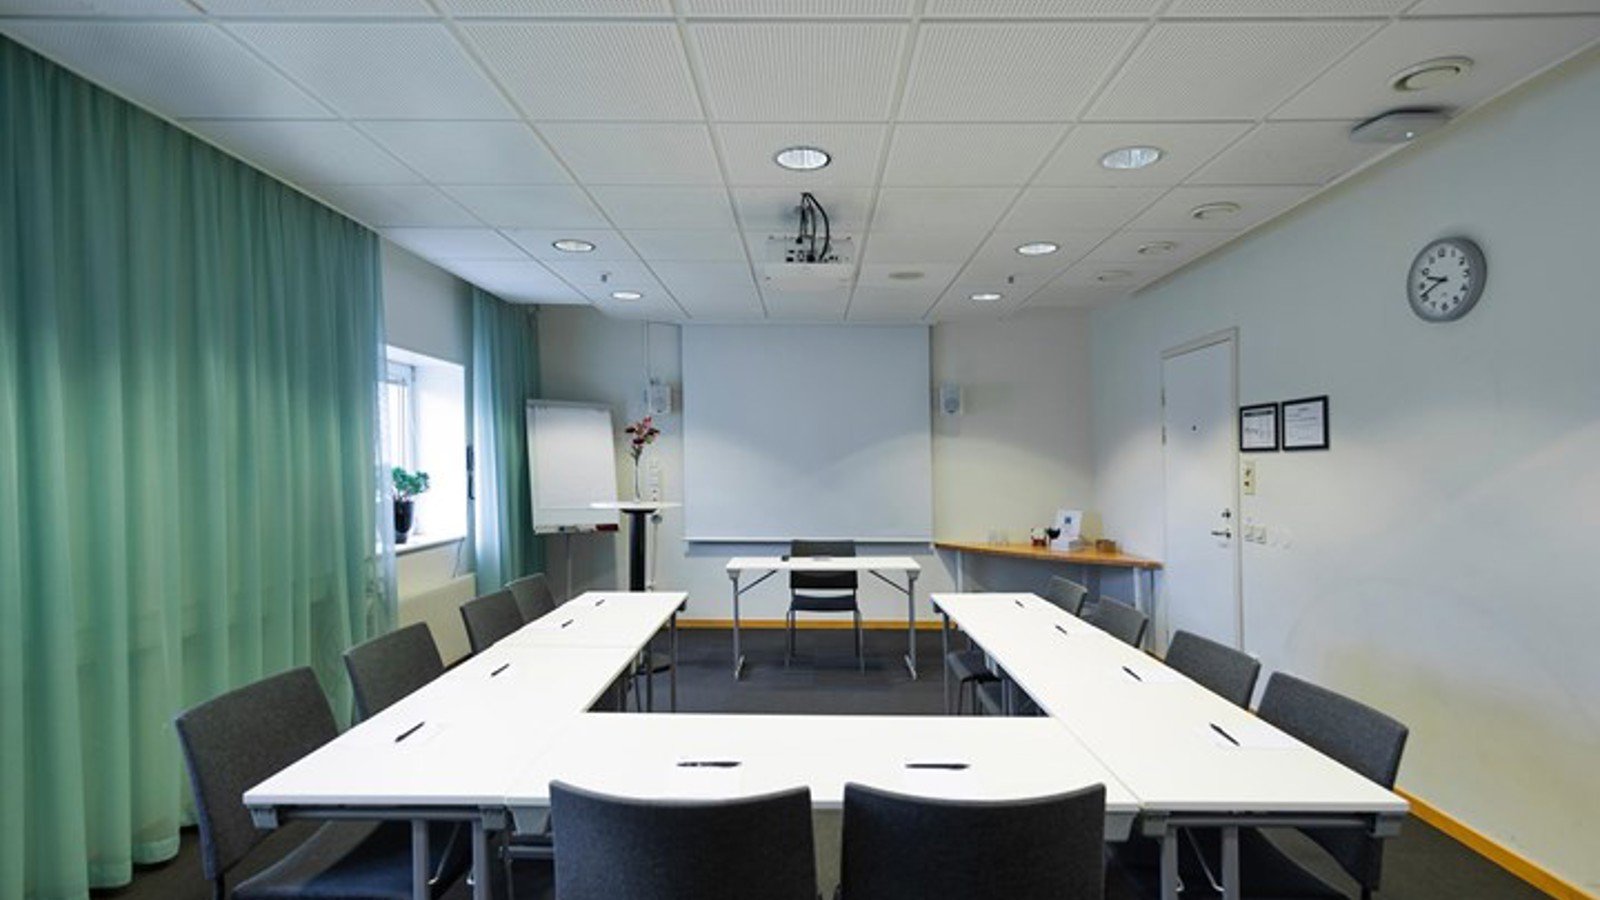 Konferensrum med u-sittning, gröna gardiner, vitt bord, grå stolar